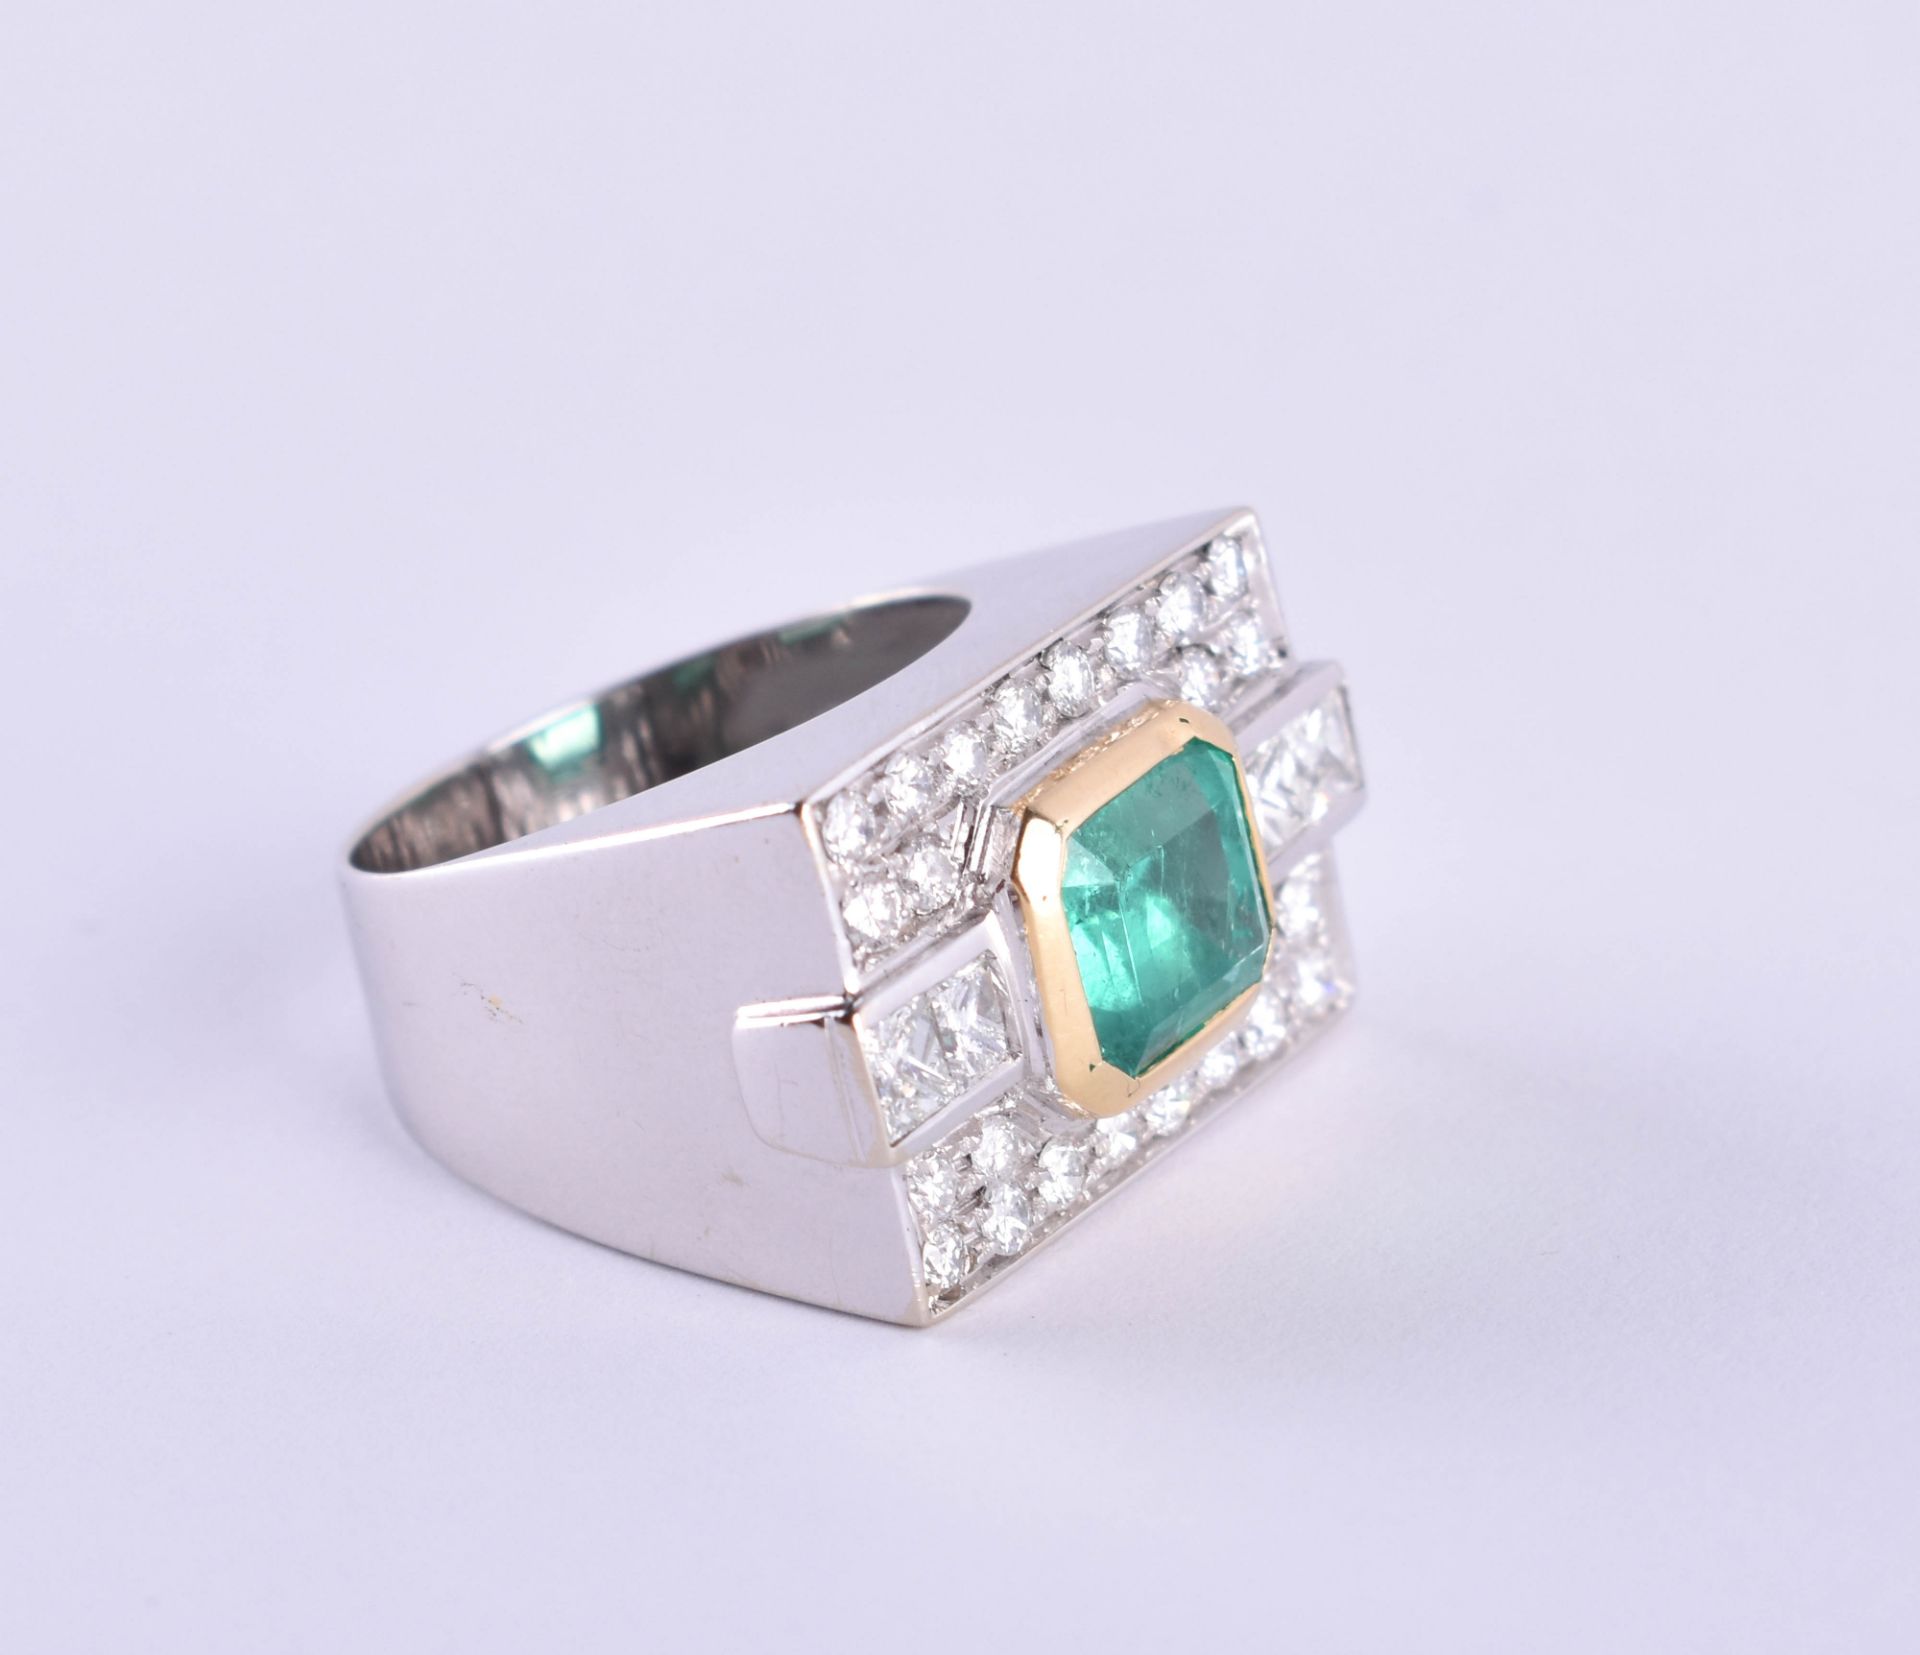  Ladies emerald, brilliant ring - Image 3 of 5